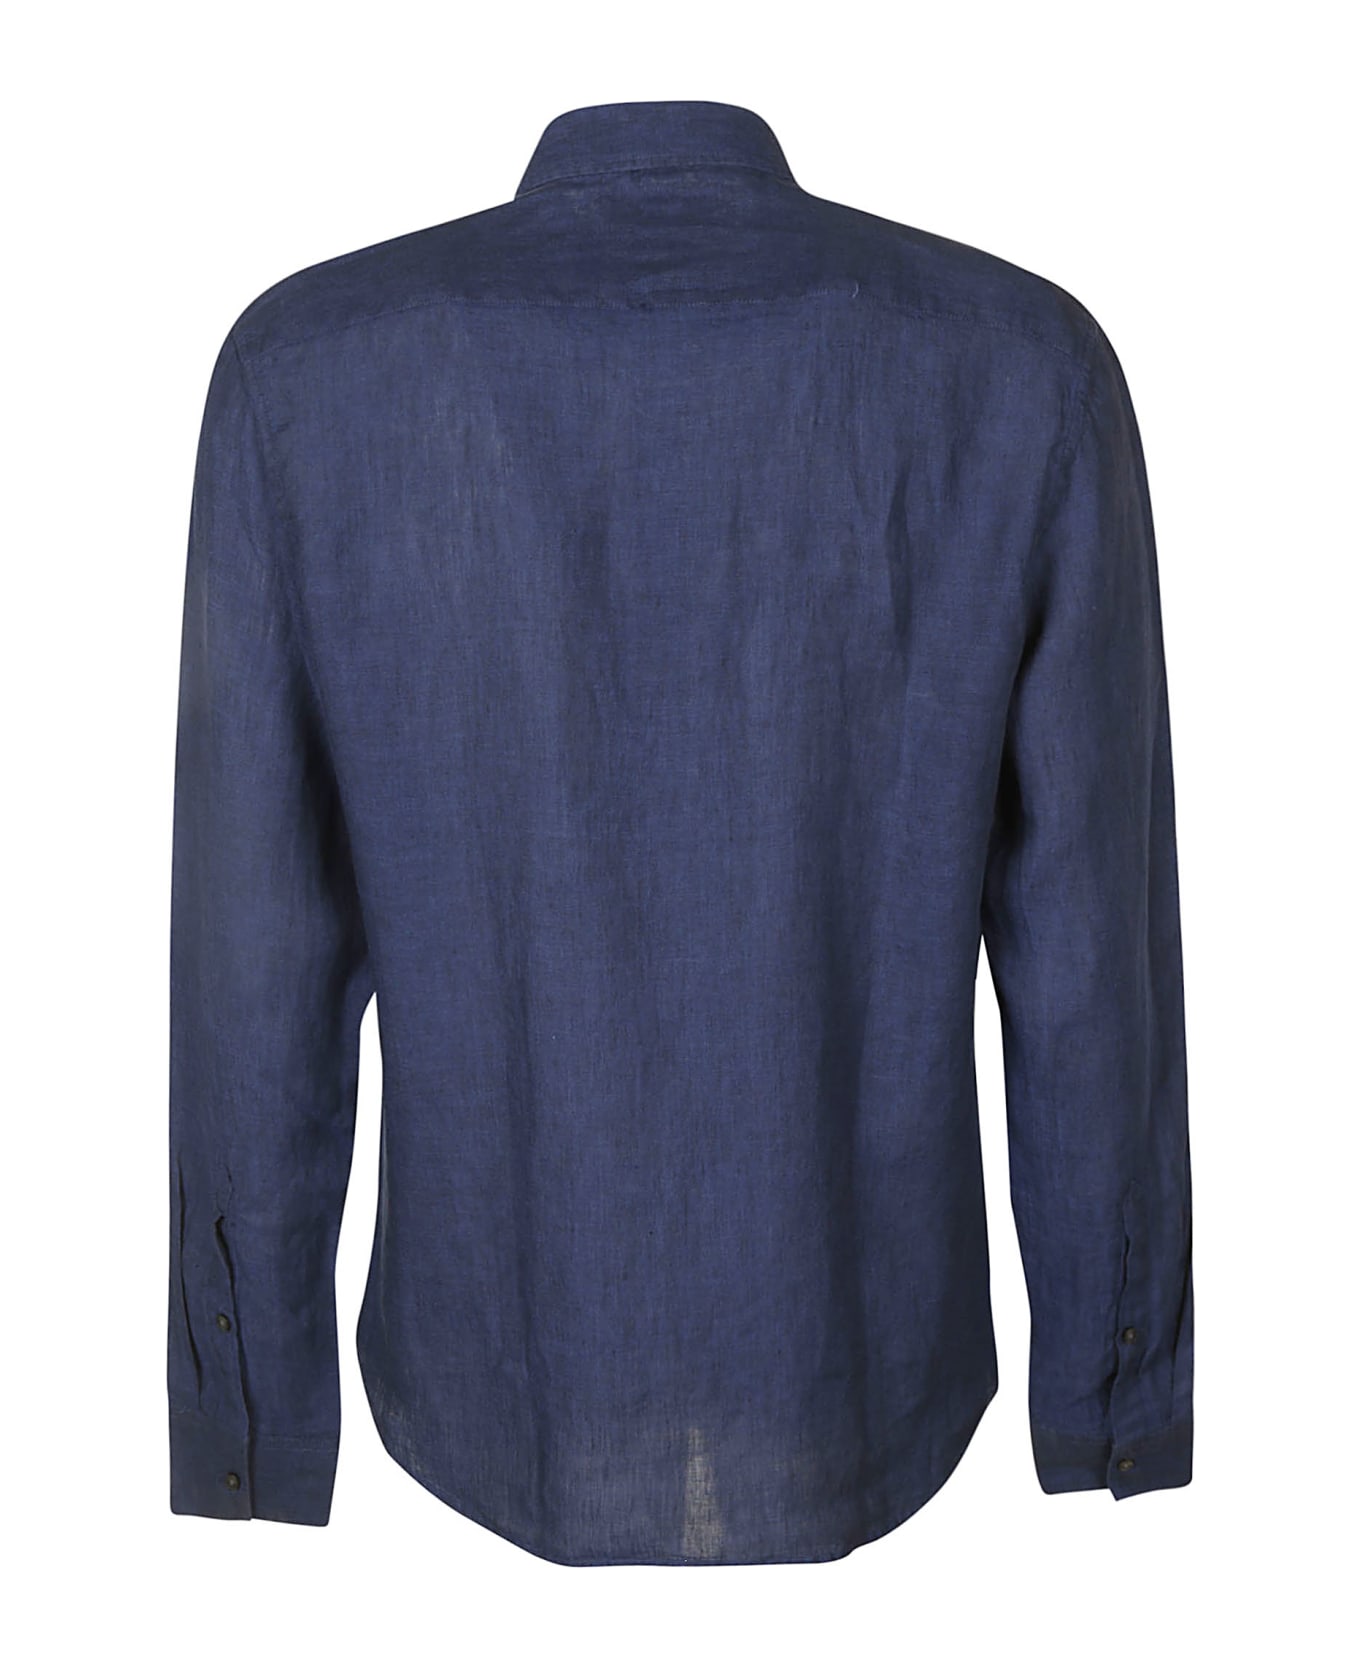 Michael Kors Round Hem Plain Shirt - Blue シャツ